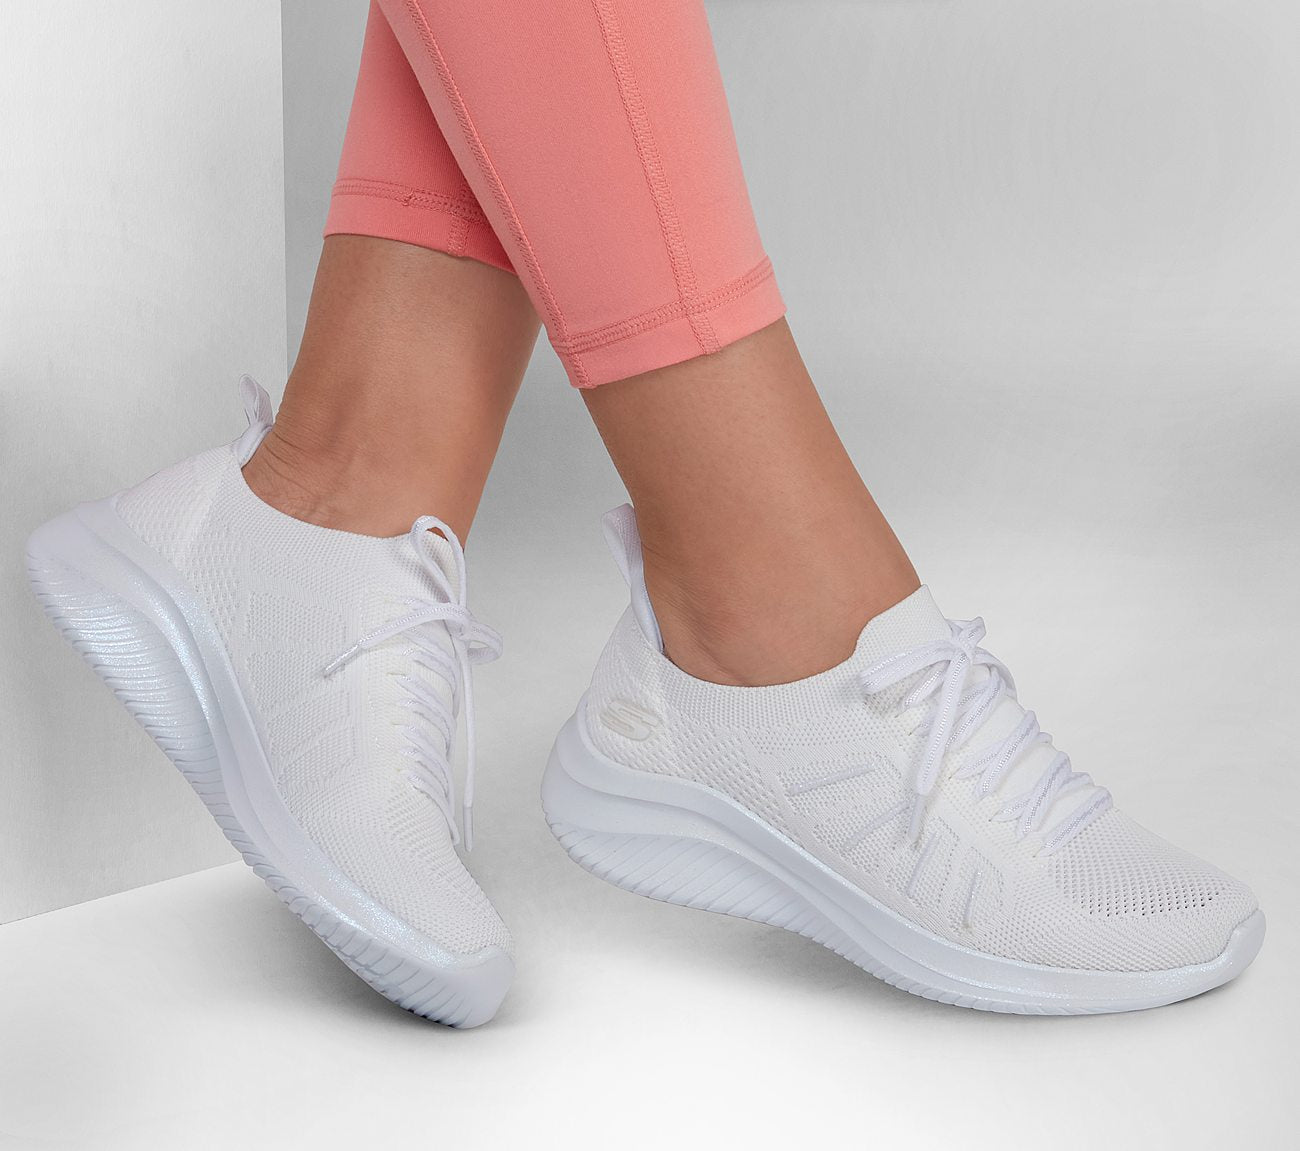 Ultra Flex 3.0 - Glowing Sky Shoe Skechers